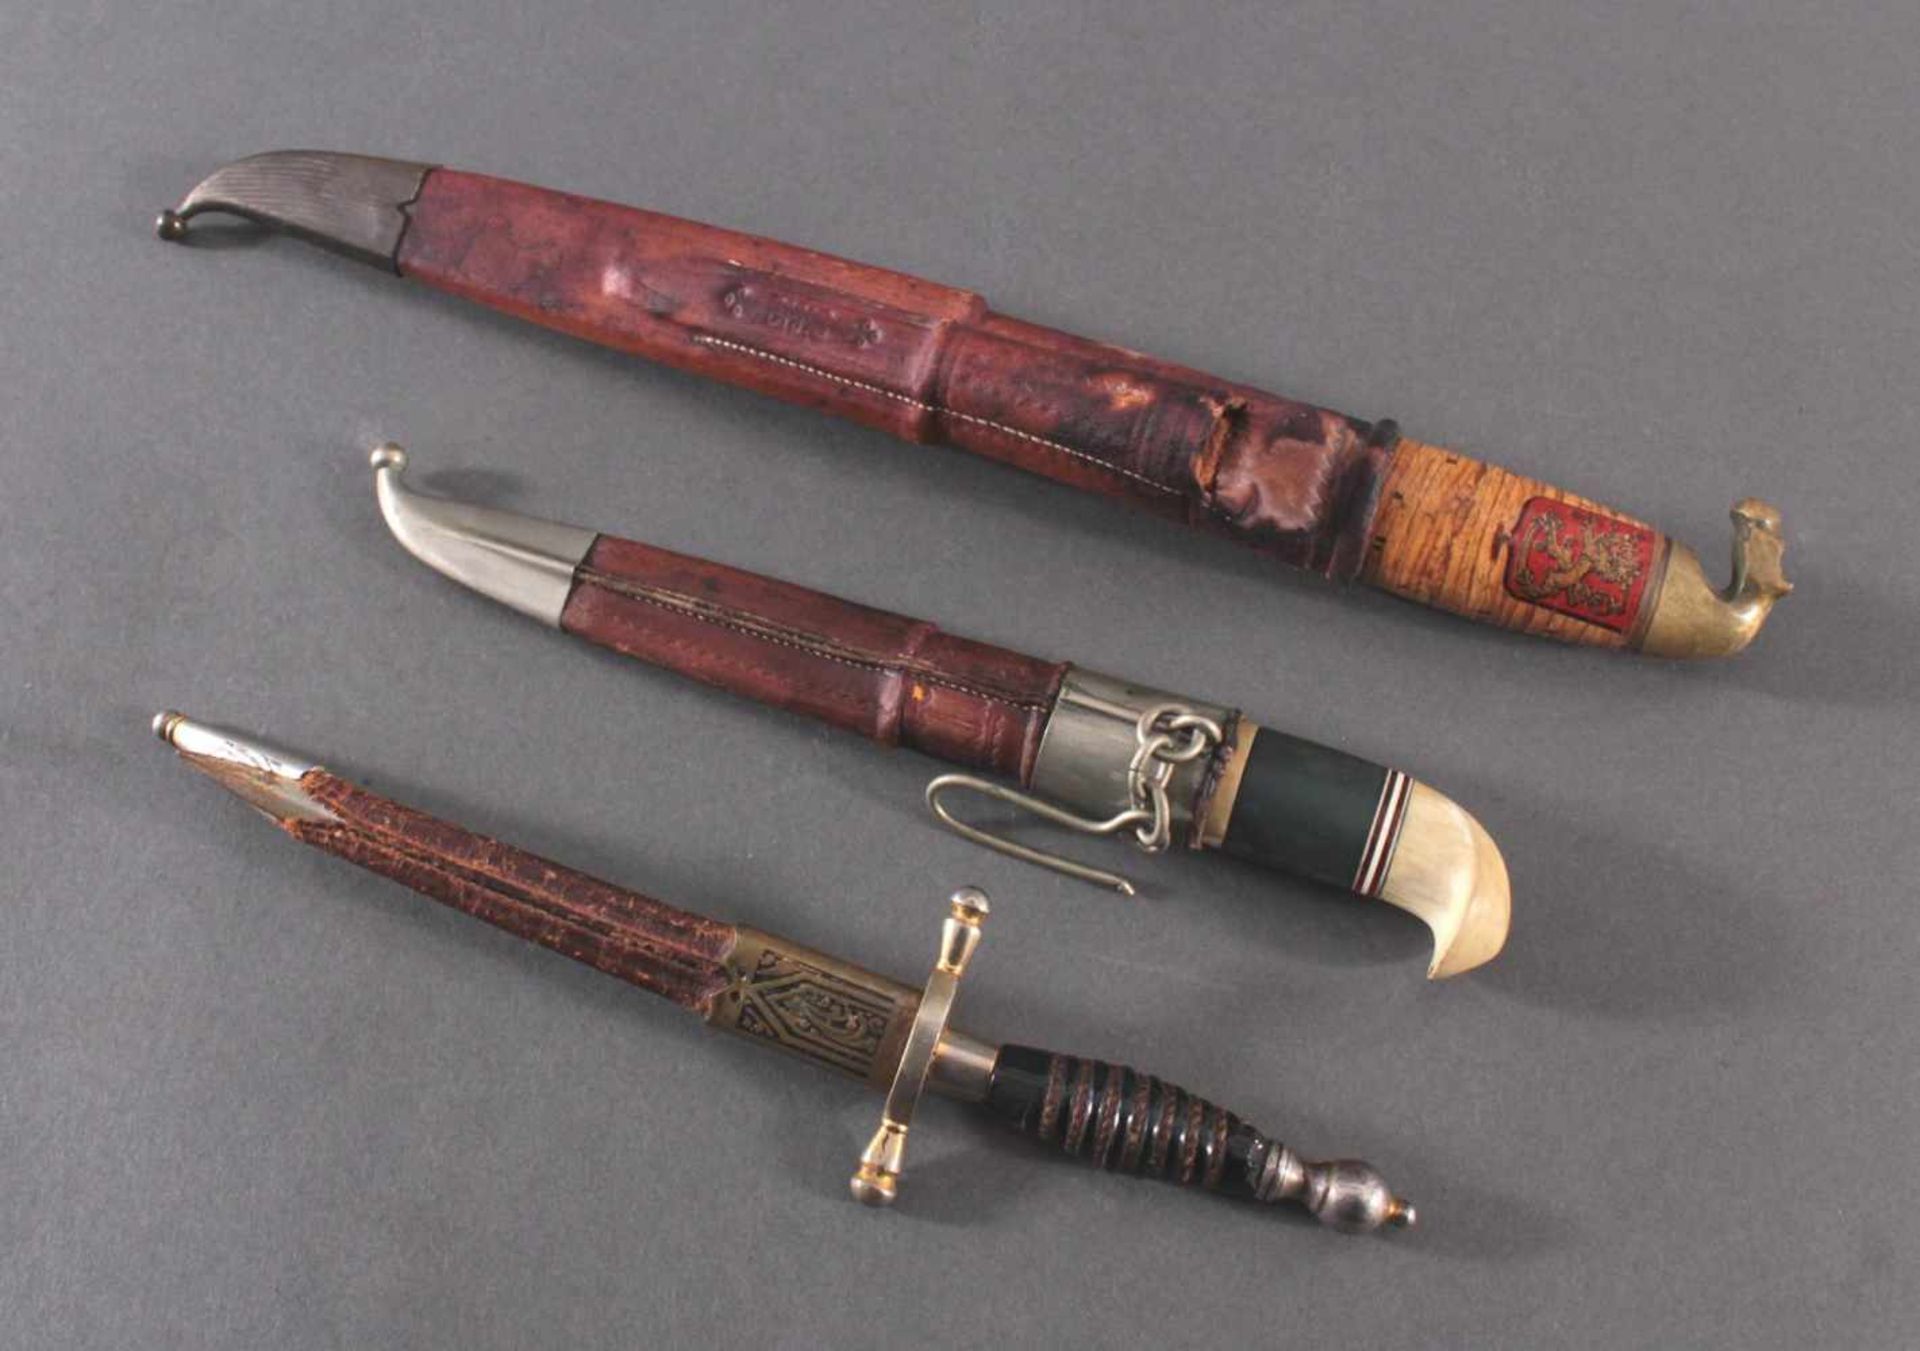 3 Messer2 Messer mit verzierter Klinge, Lederscheide mit Metallaplikationen, Griffe aus Bakelit, - Image 8 of 8